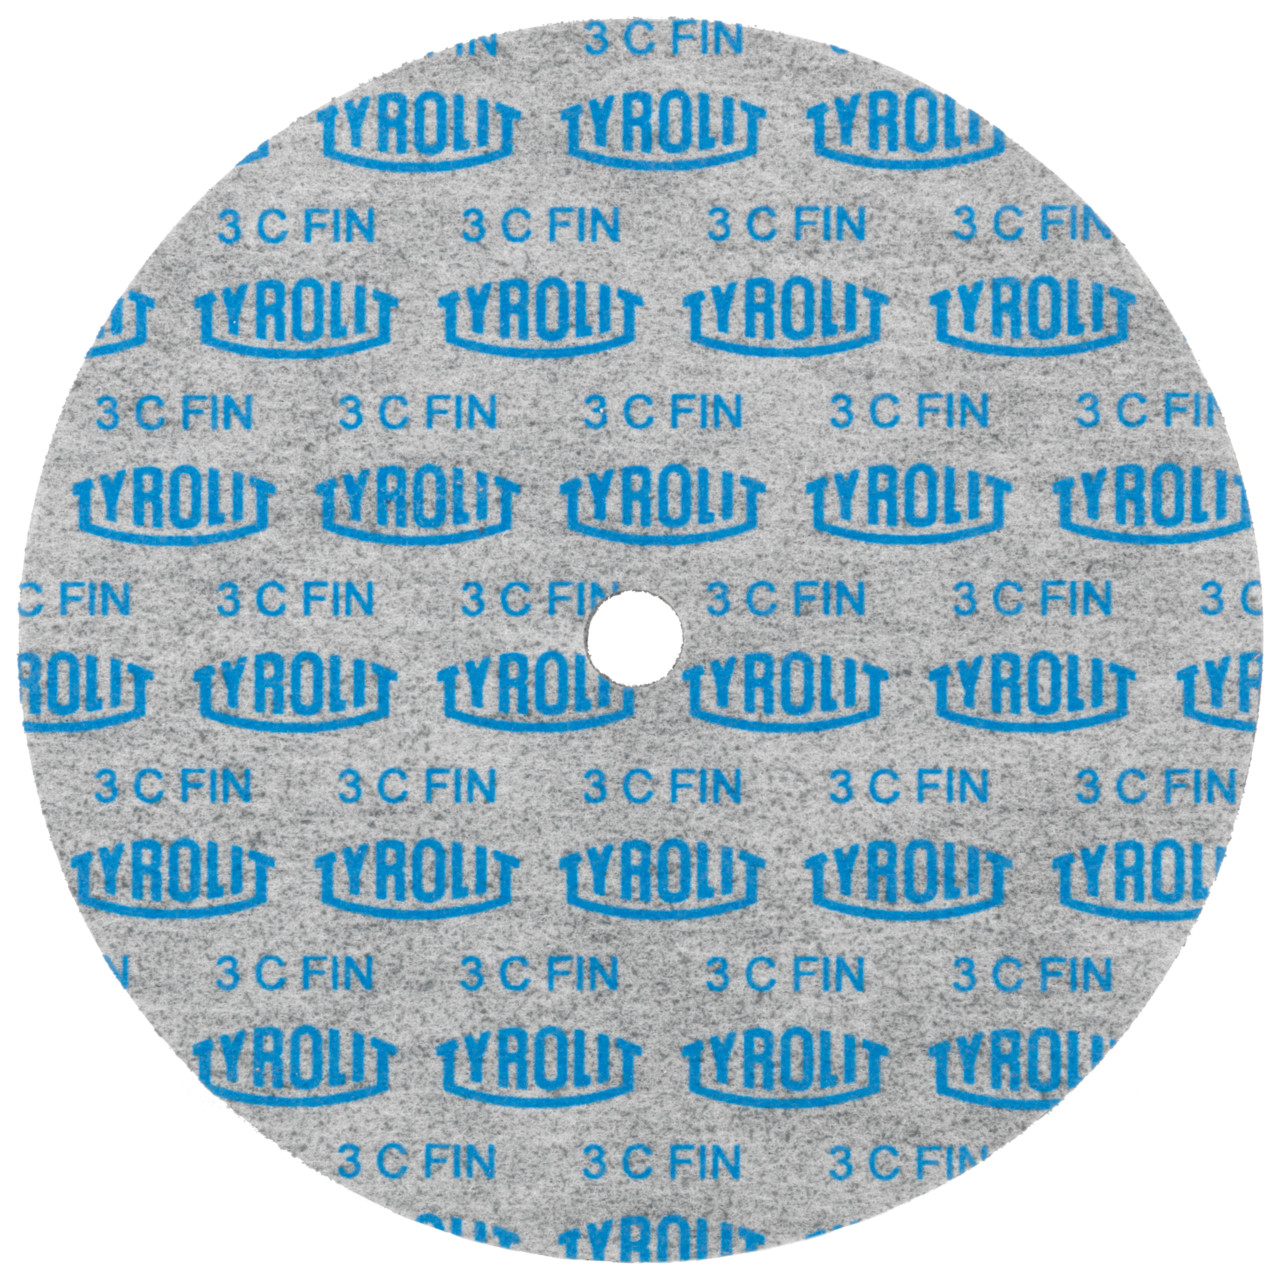 Tyrolit Discos compactos prensados DxDxH 152x6x12,7 Inserción universal, 6 A MEDIO, forma: 1, Art. 34190237